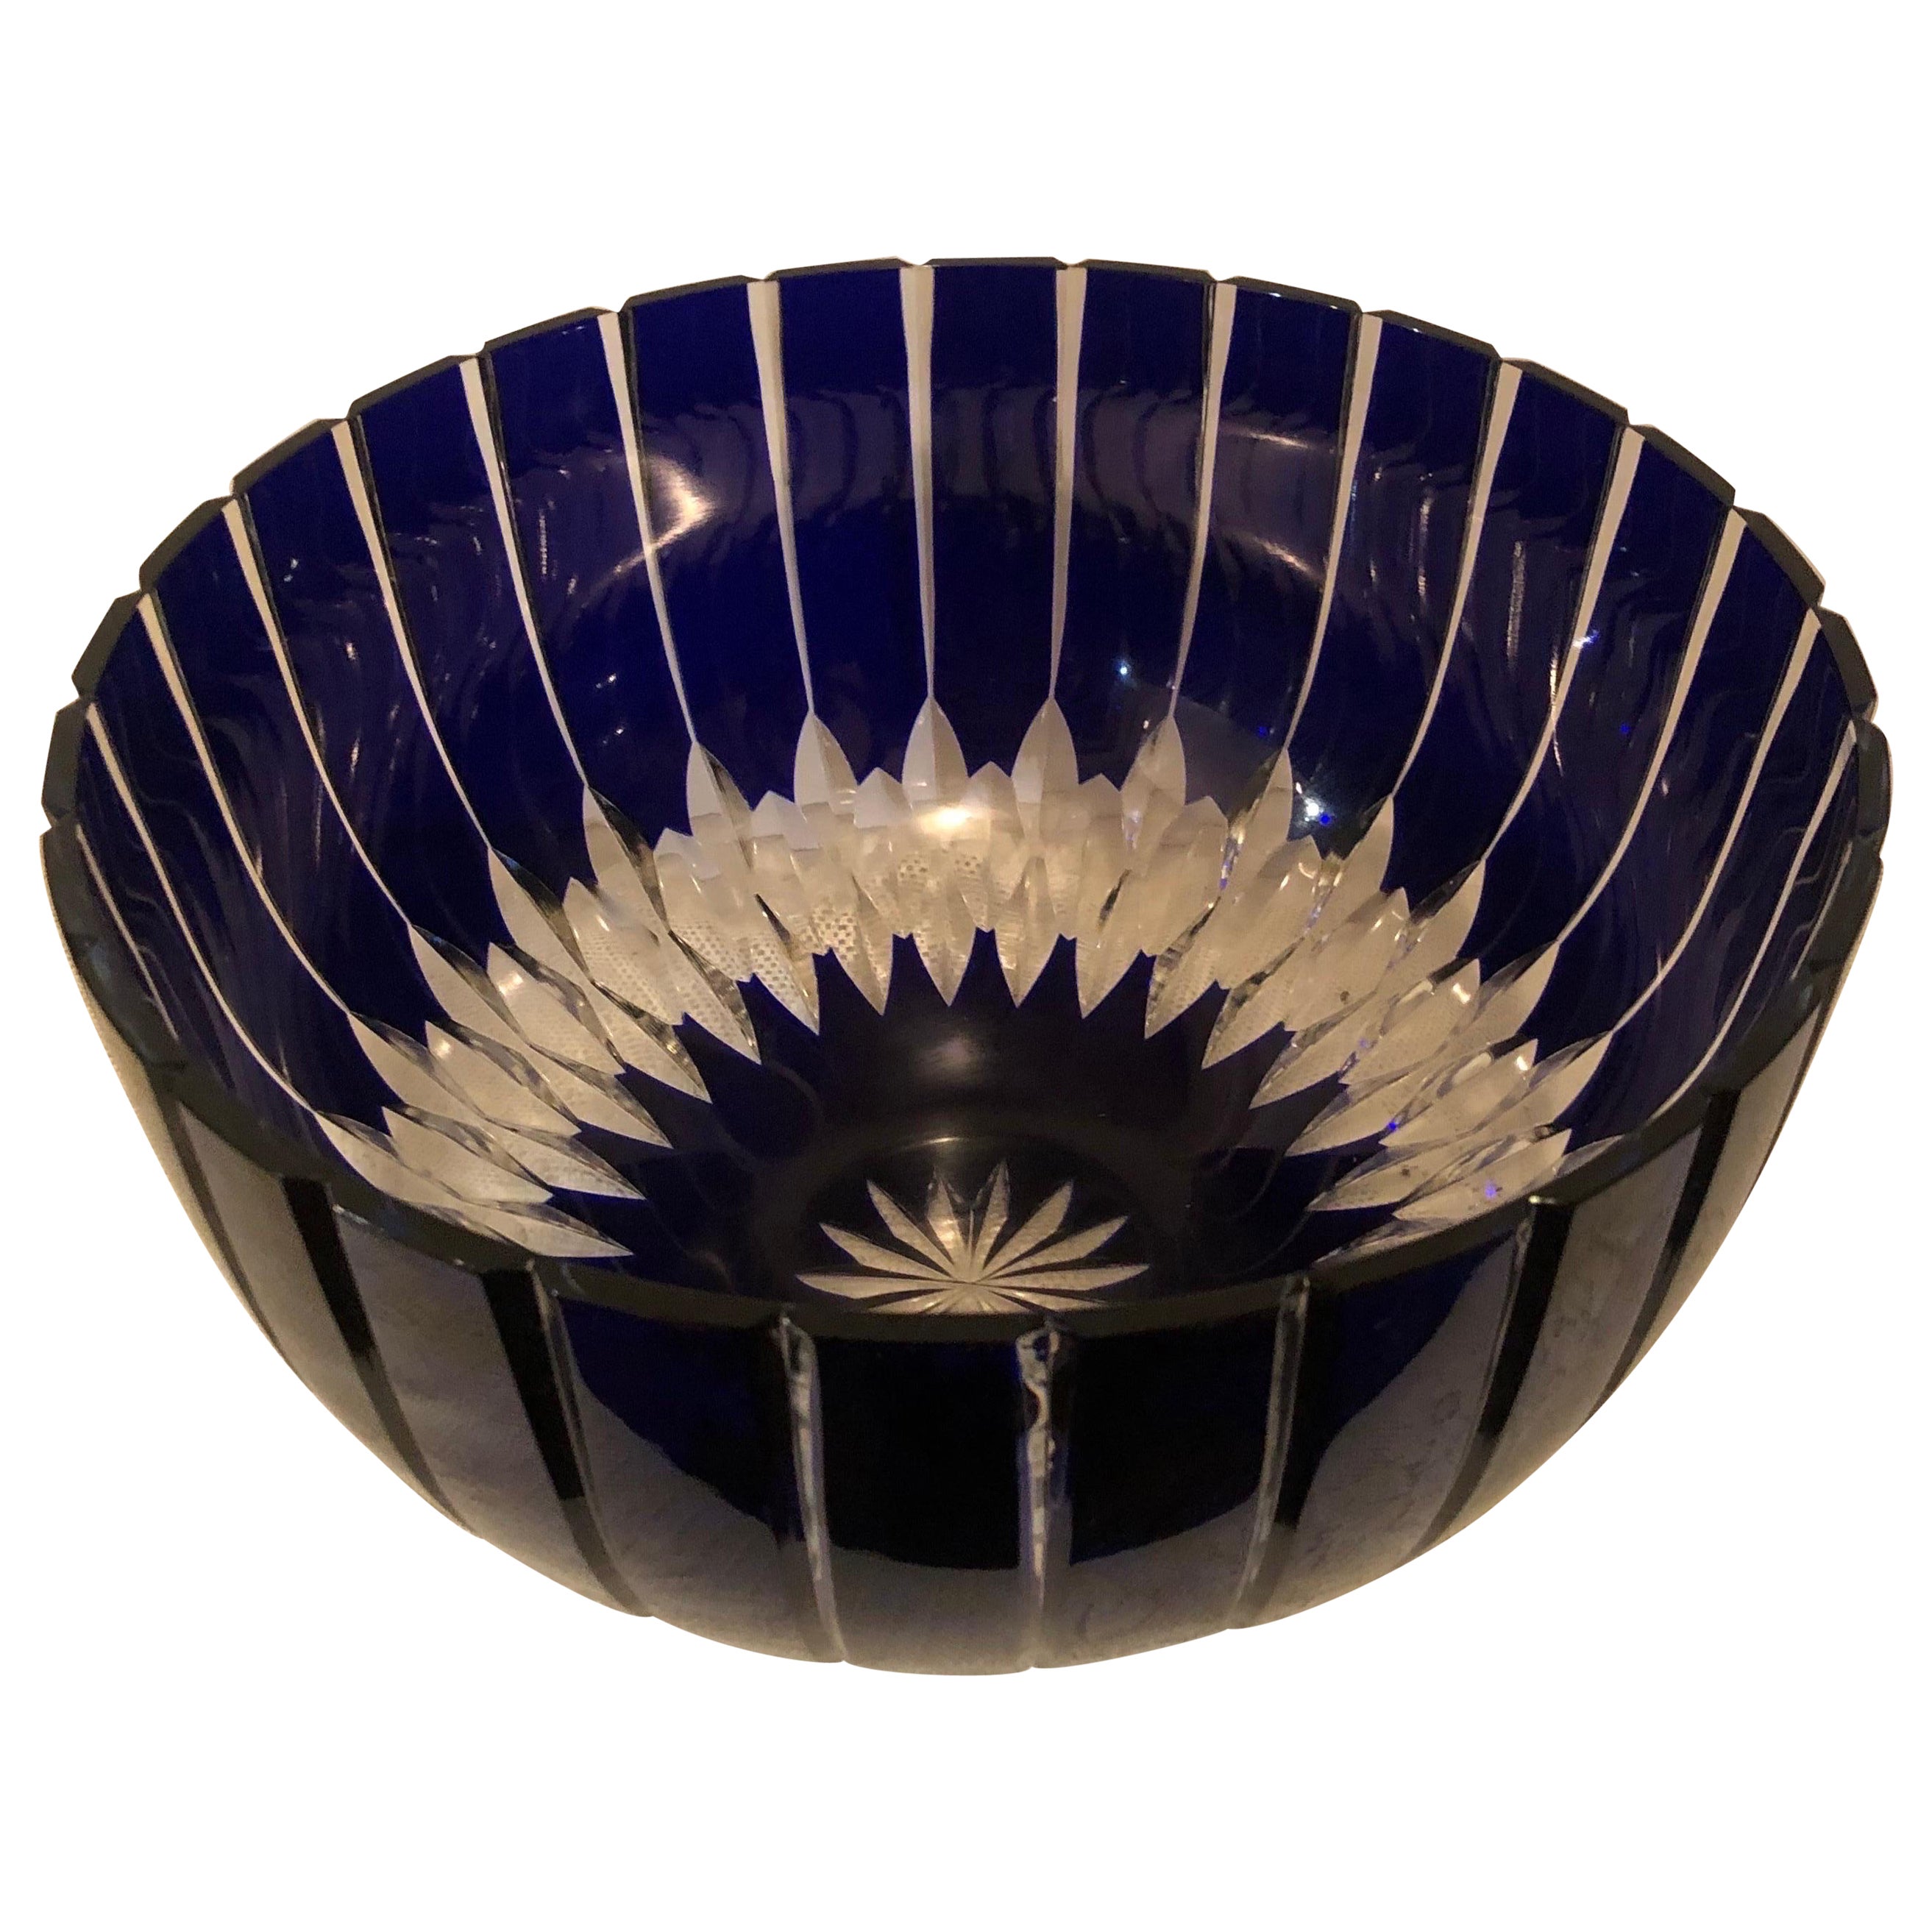 Grand bol à punch ou bol de centre de table en cristal taillé de Bohème tchécoslovaque cobalt